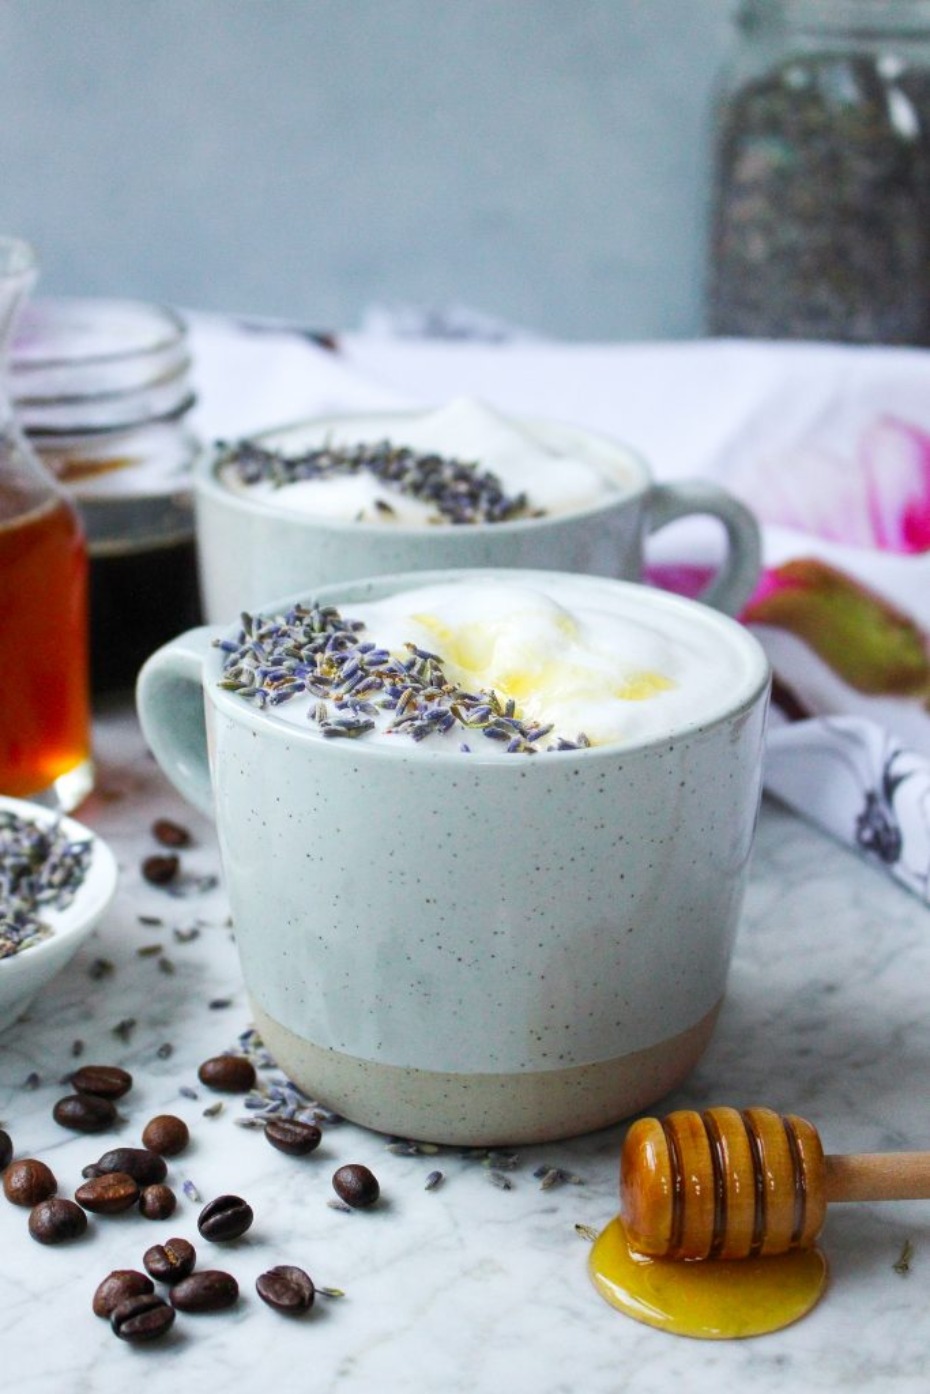 Honey lavender latte